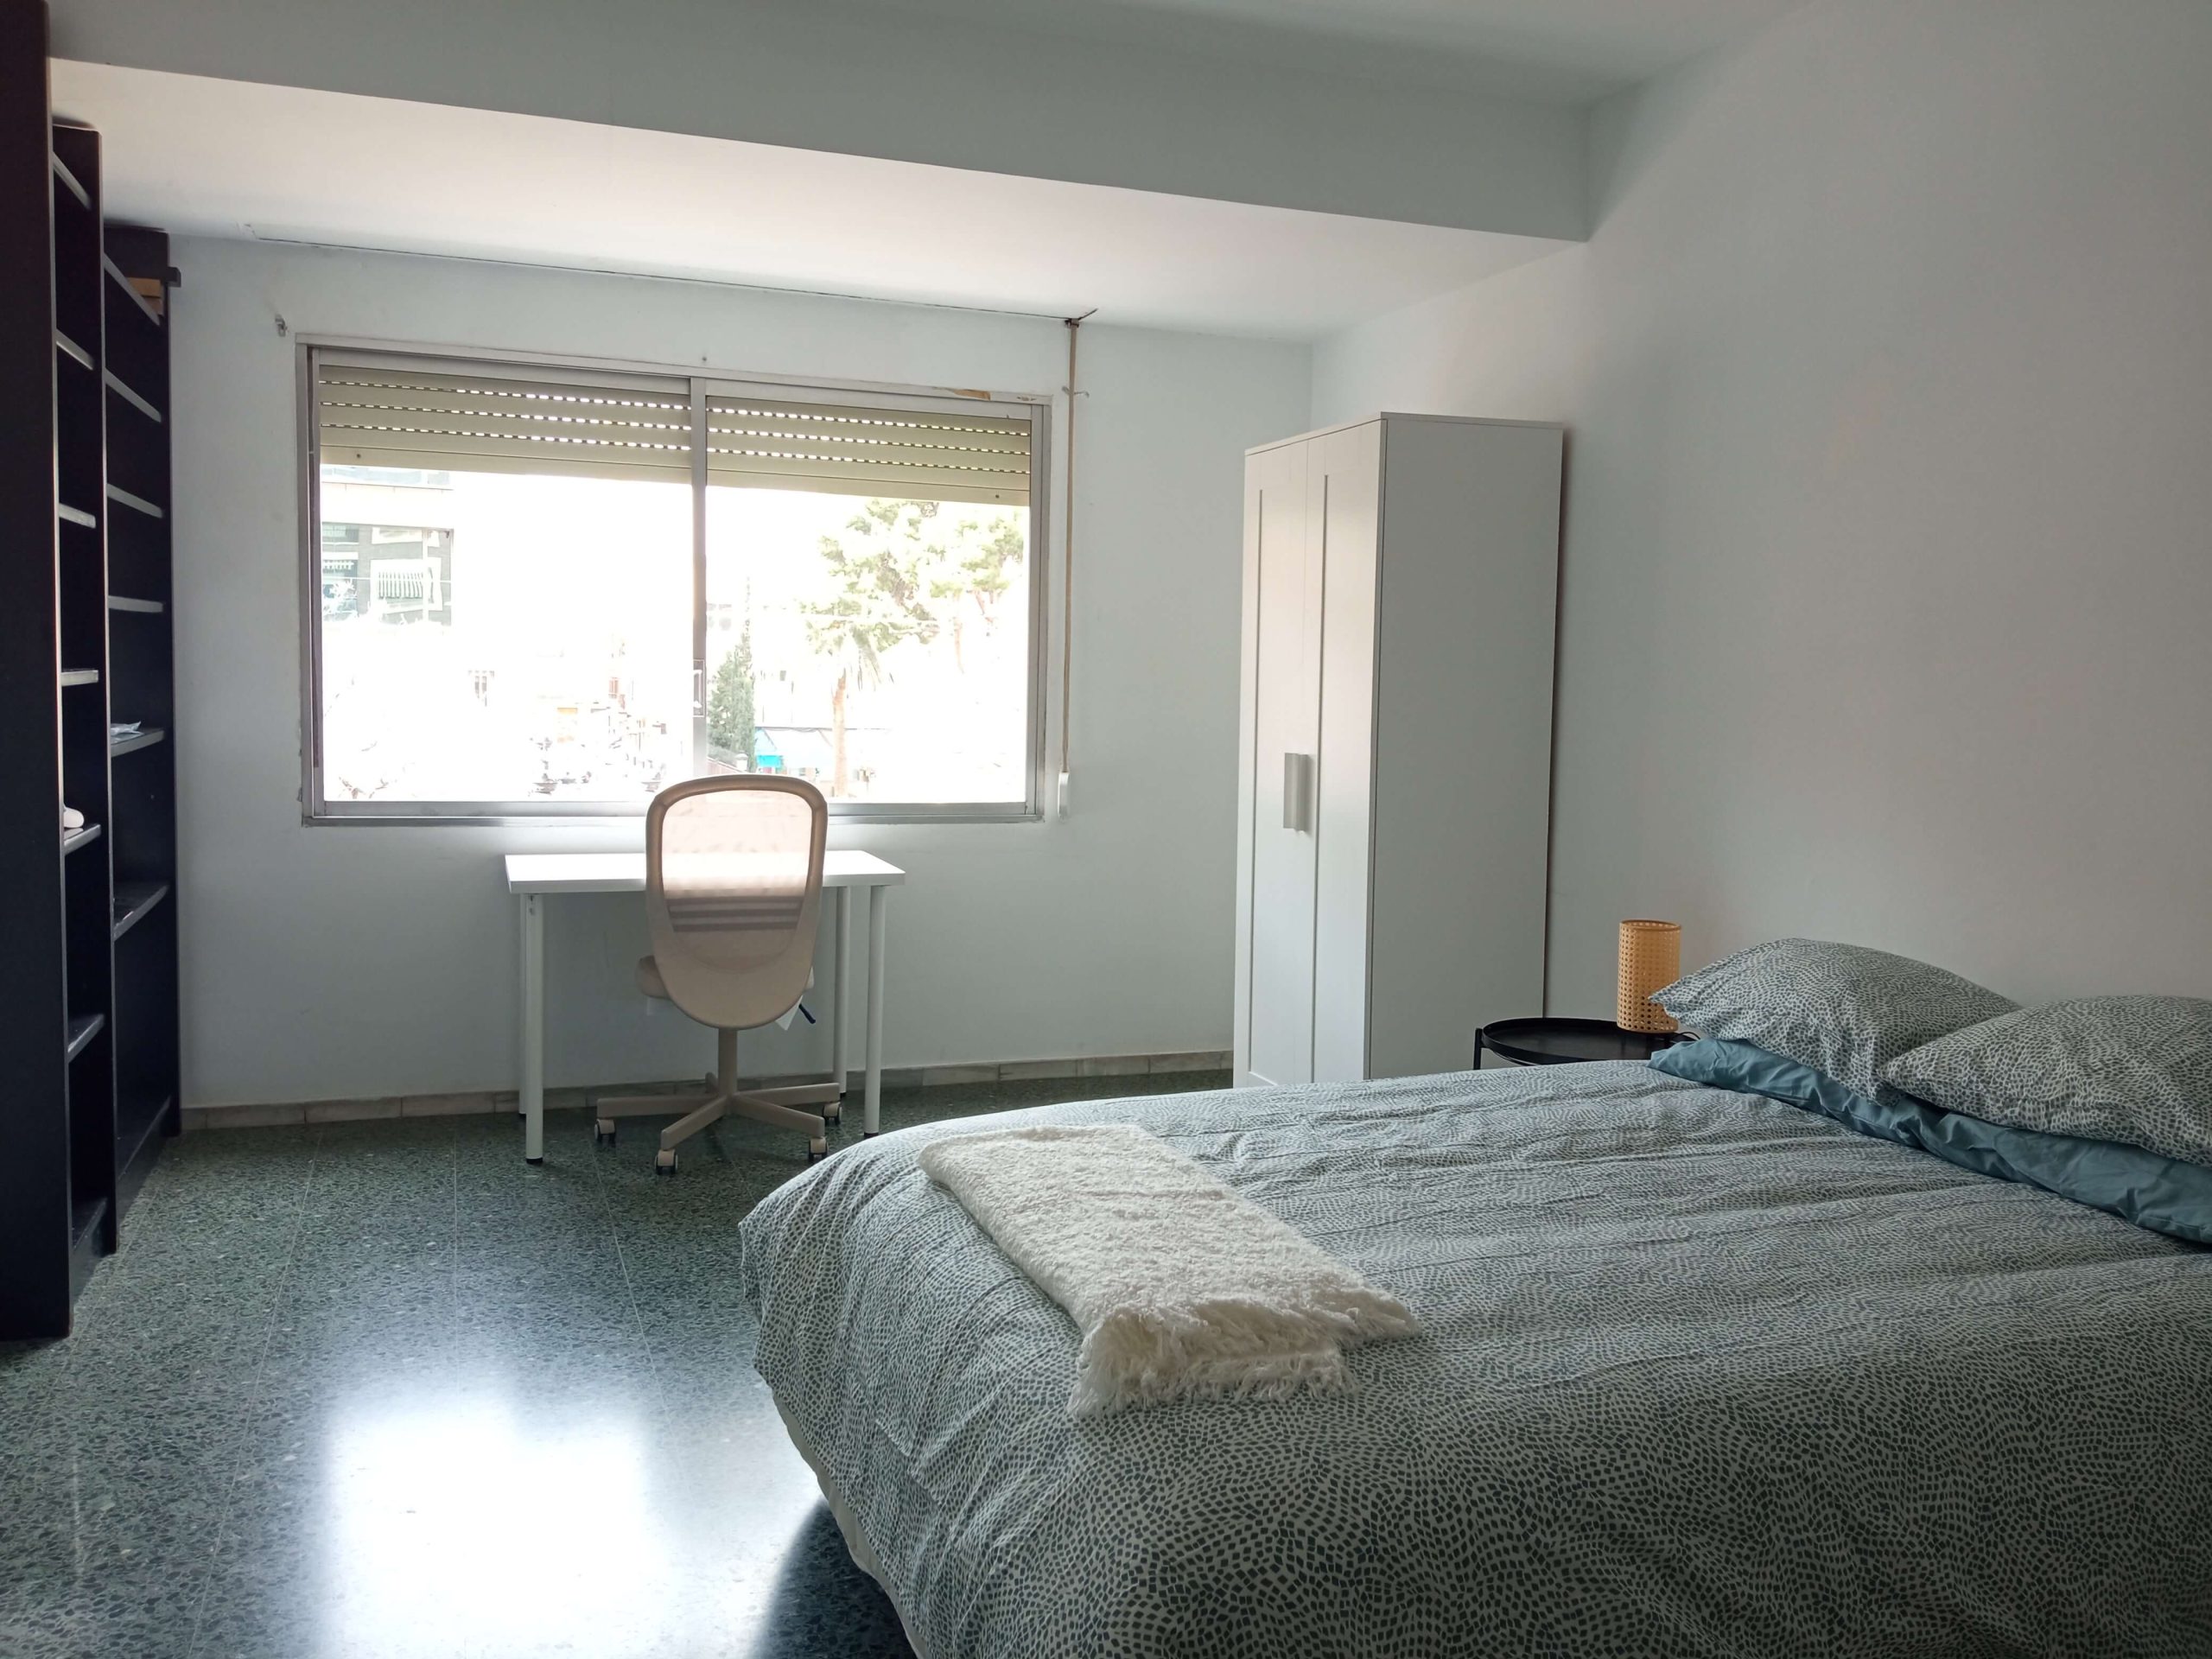 Bedroom 2 apartment for rent in valencia, guillen